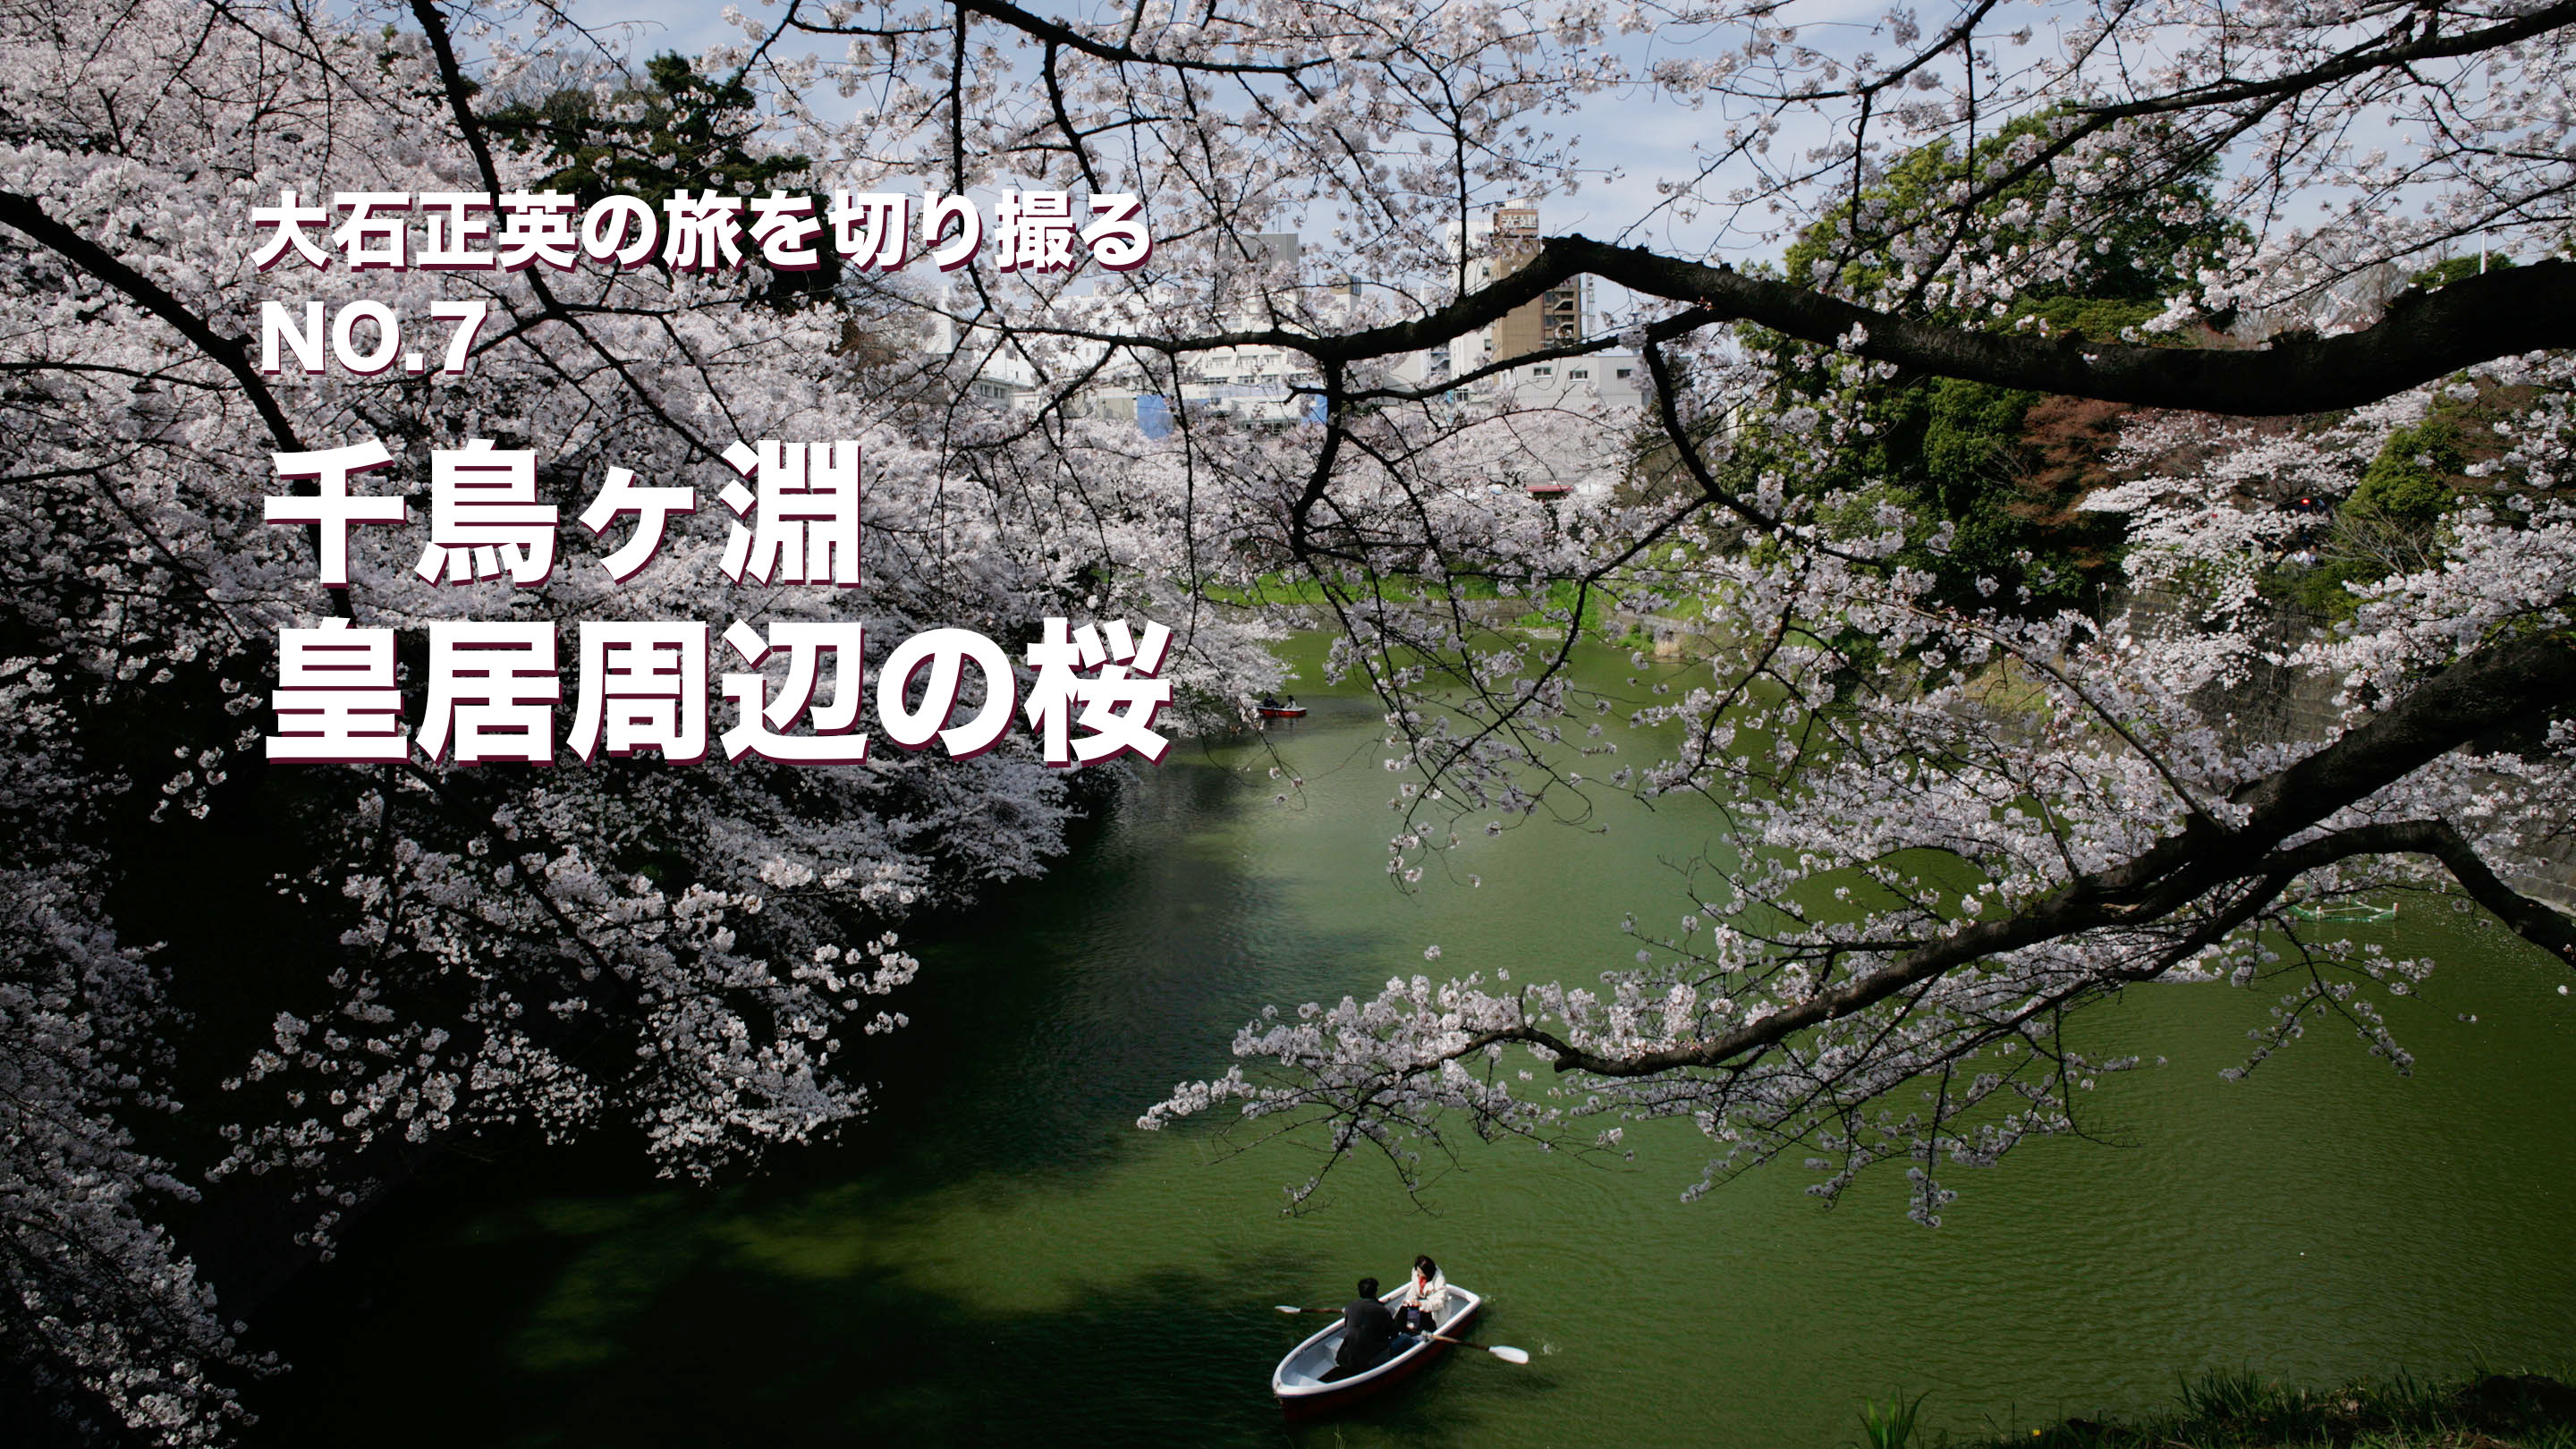 大石正英の旅を切り撮る NO.7 千鳥ヶ淵・皇居周辺の桜